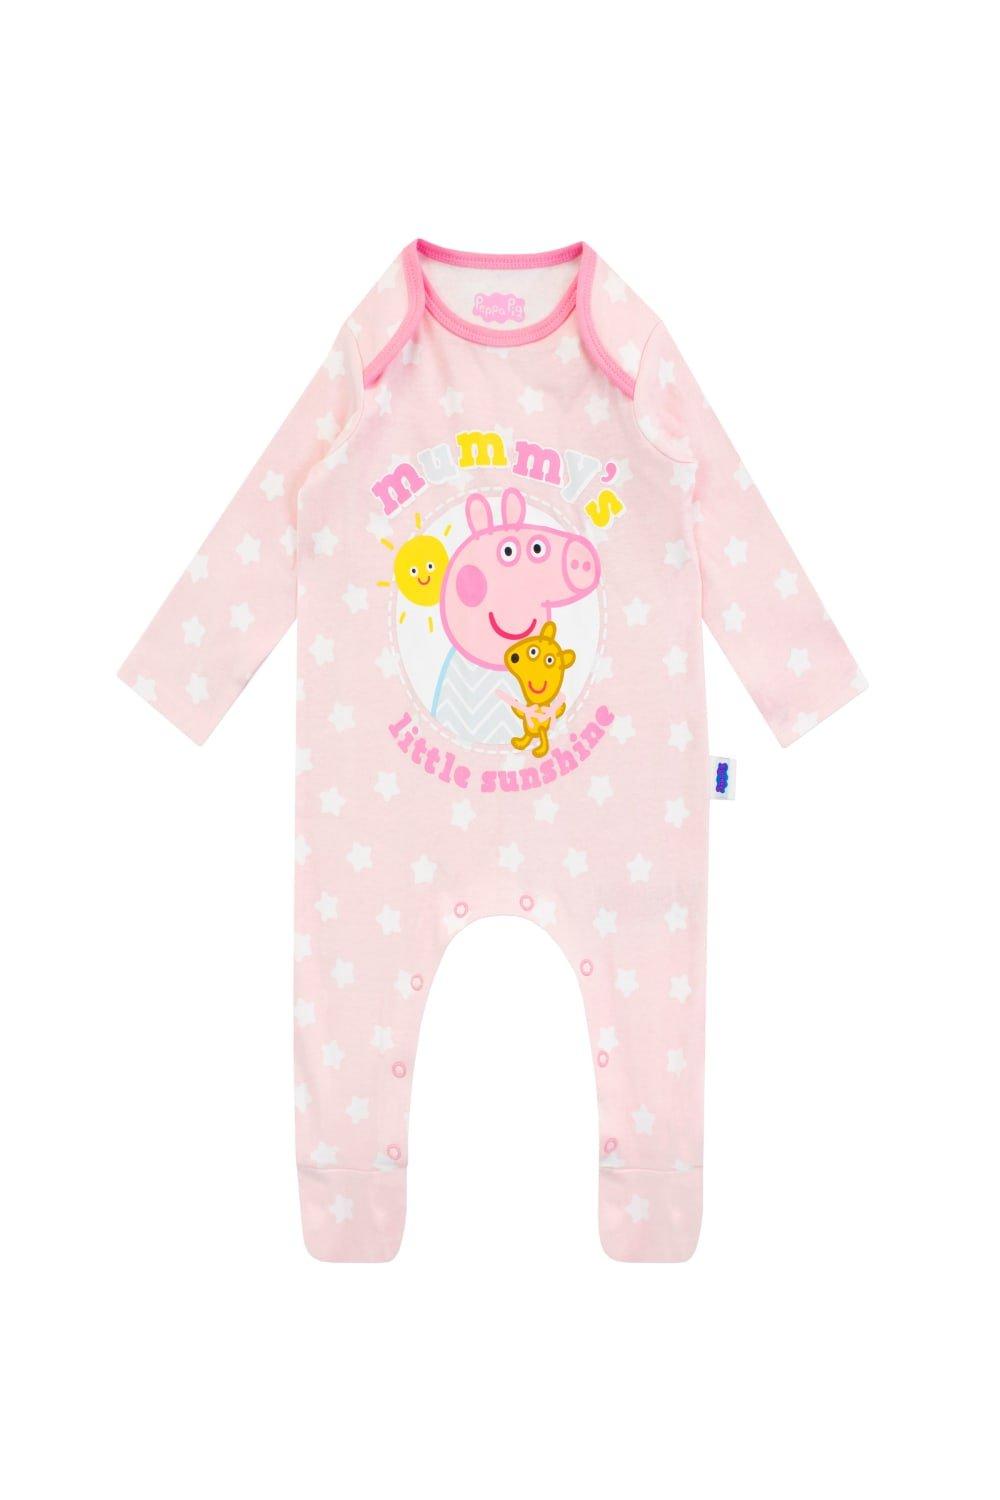 Mummy’s Little Sunshine Baby Sleepsuit